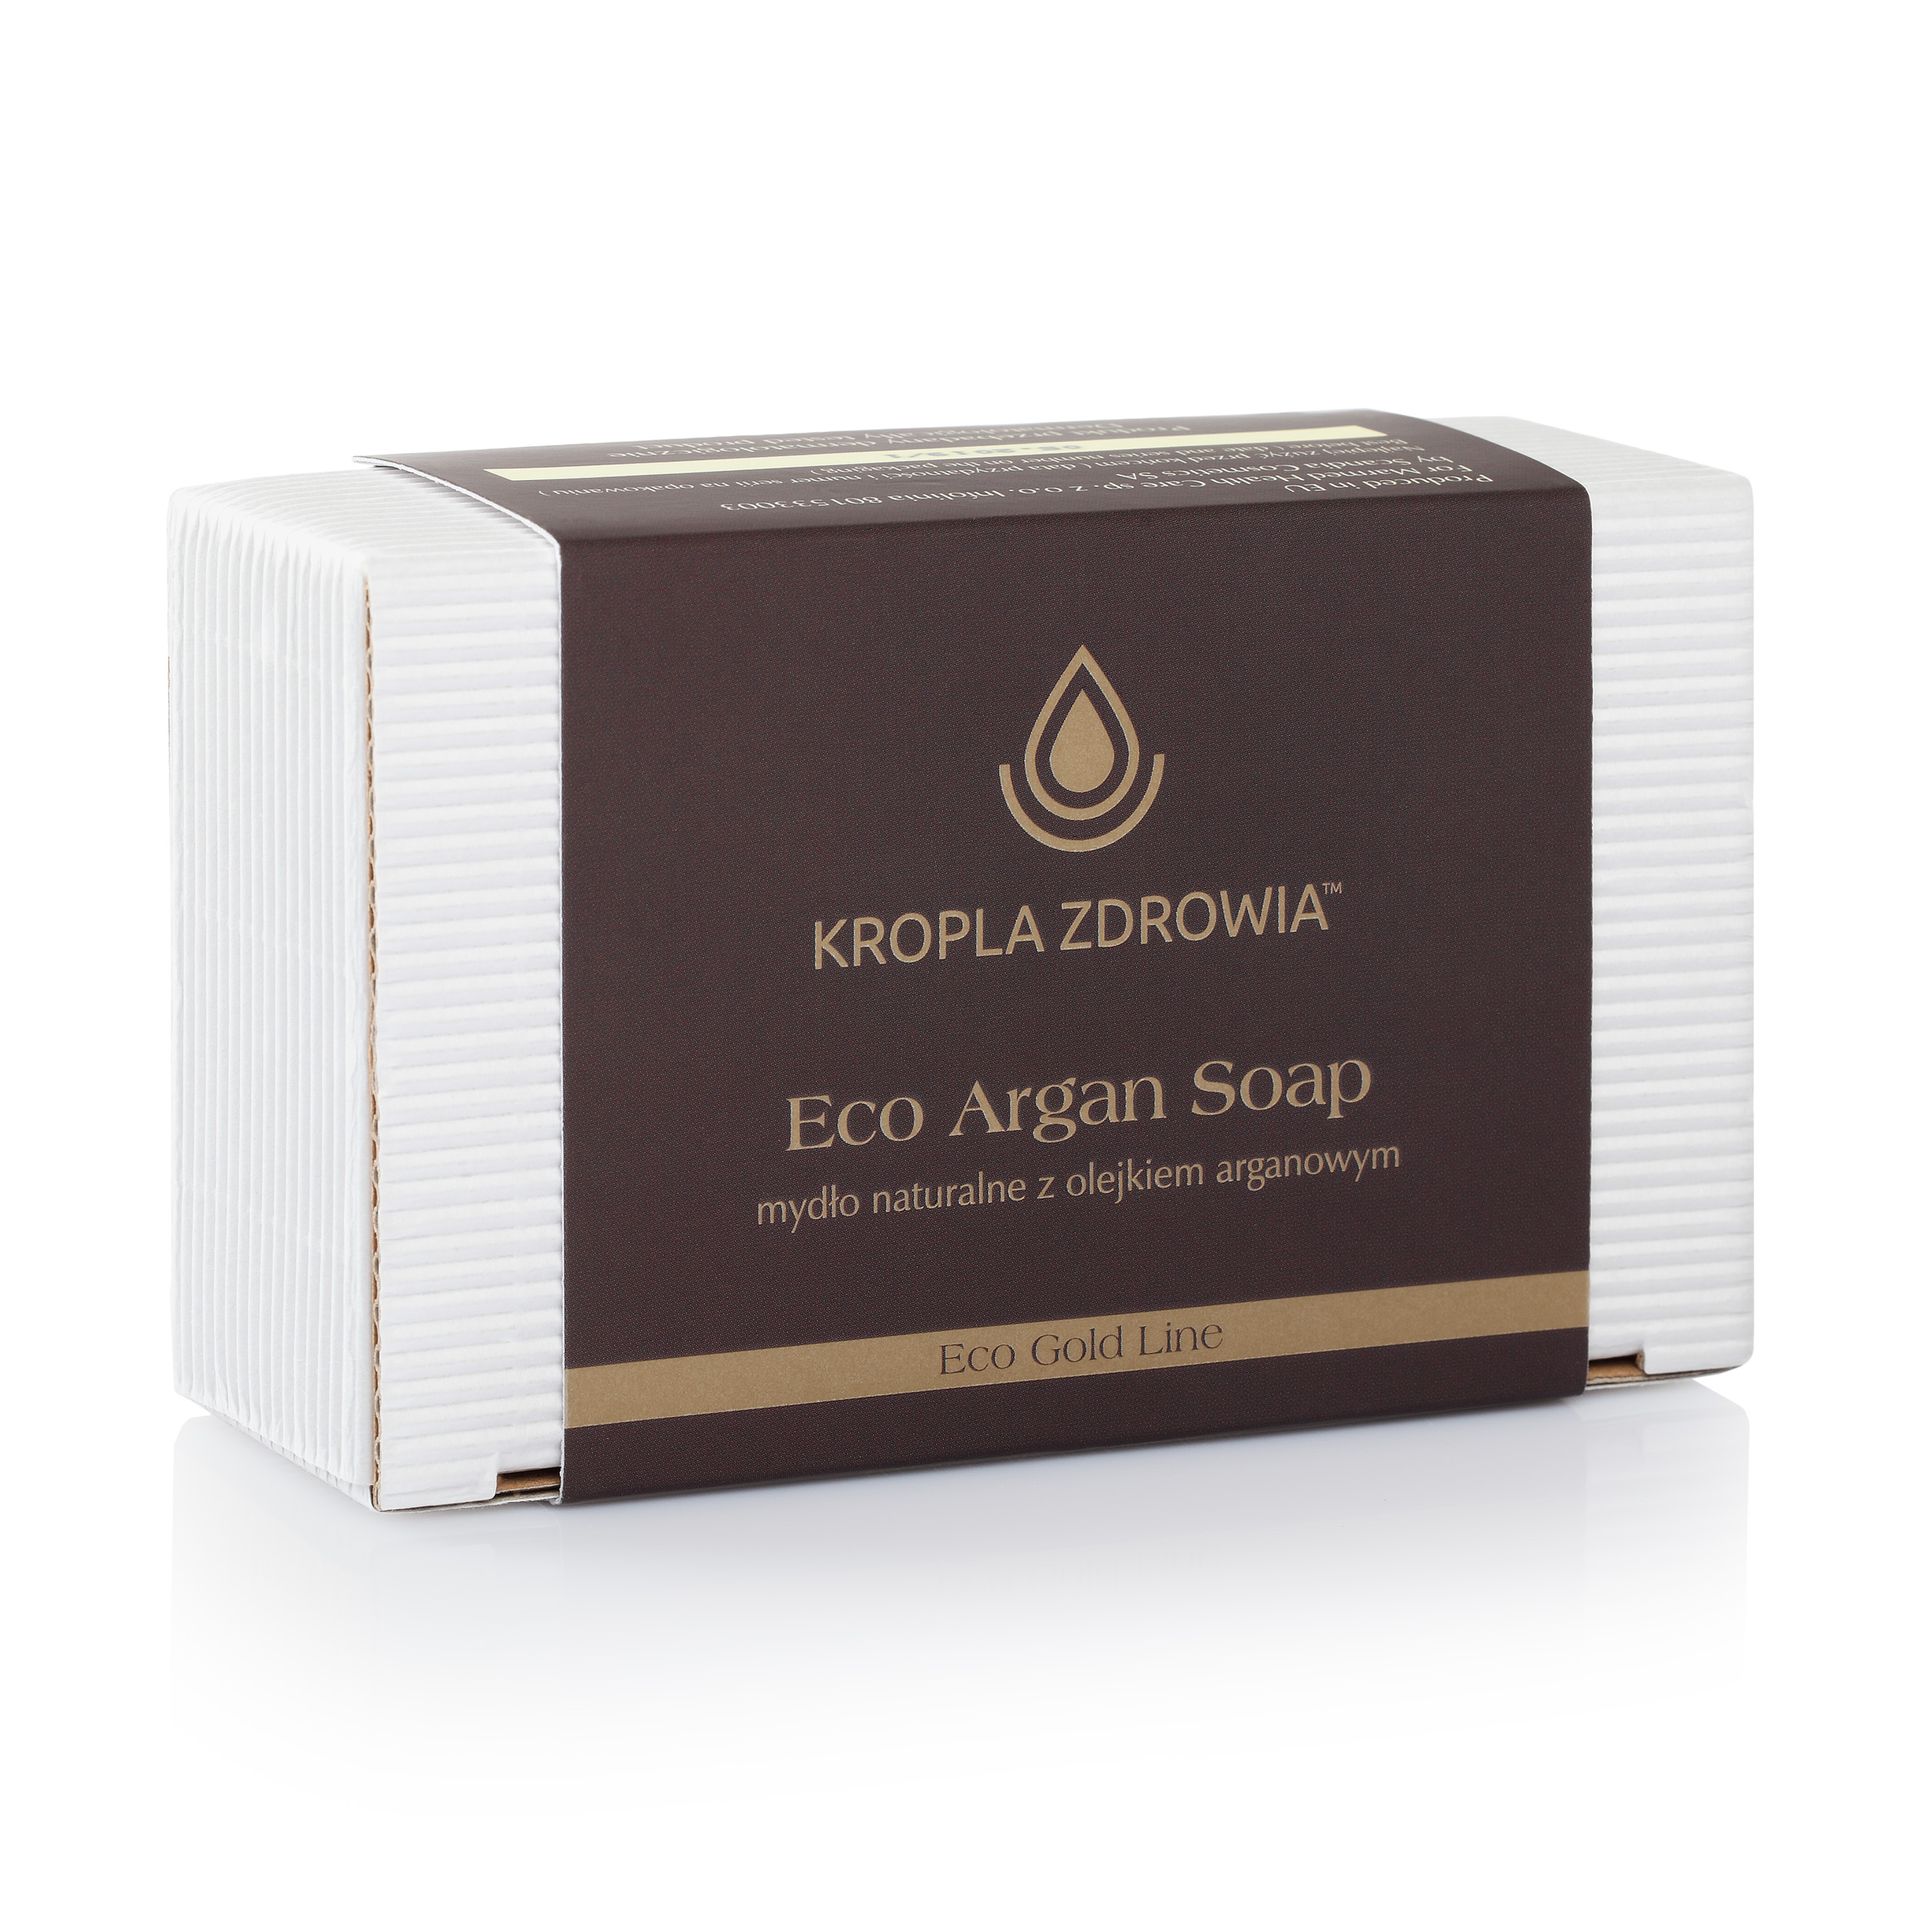 Kropla Zdrowia Eco Argan, mydło naturalne z olejkiem arganowym, 130 g |Darmowa dostawa od 199,99 zł !!! 7051146